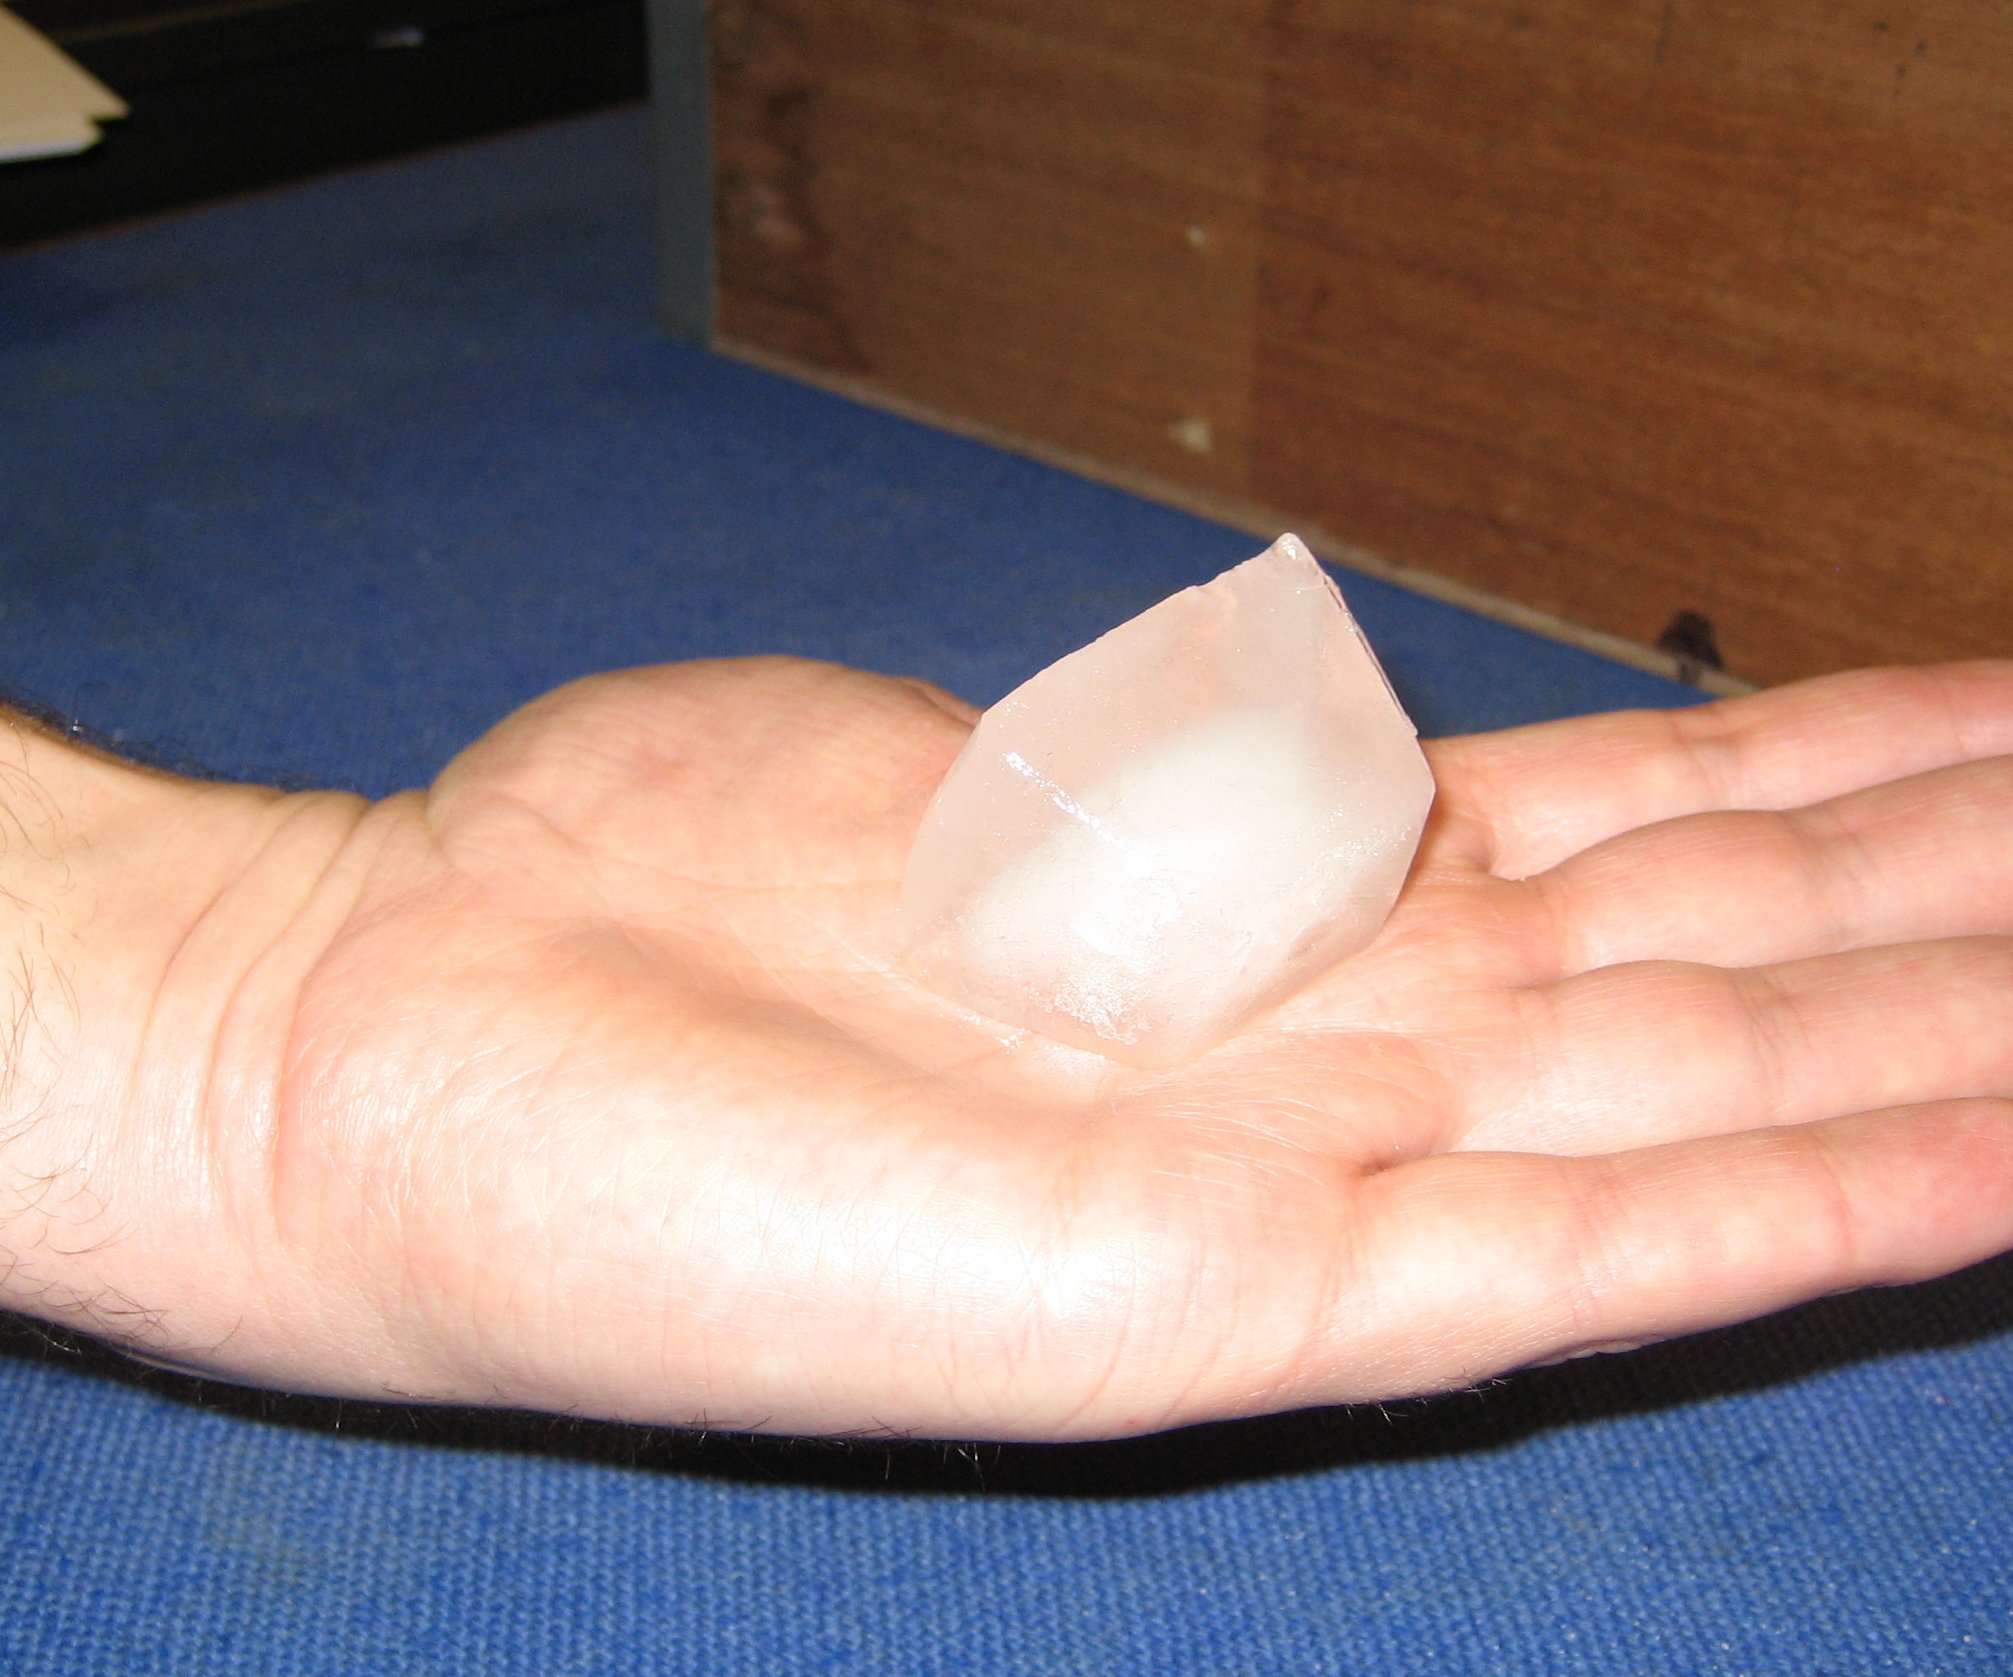 An Icecube